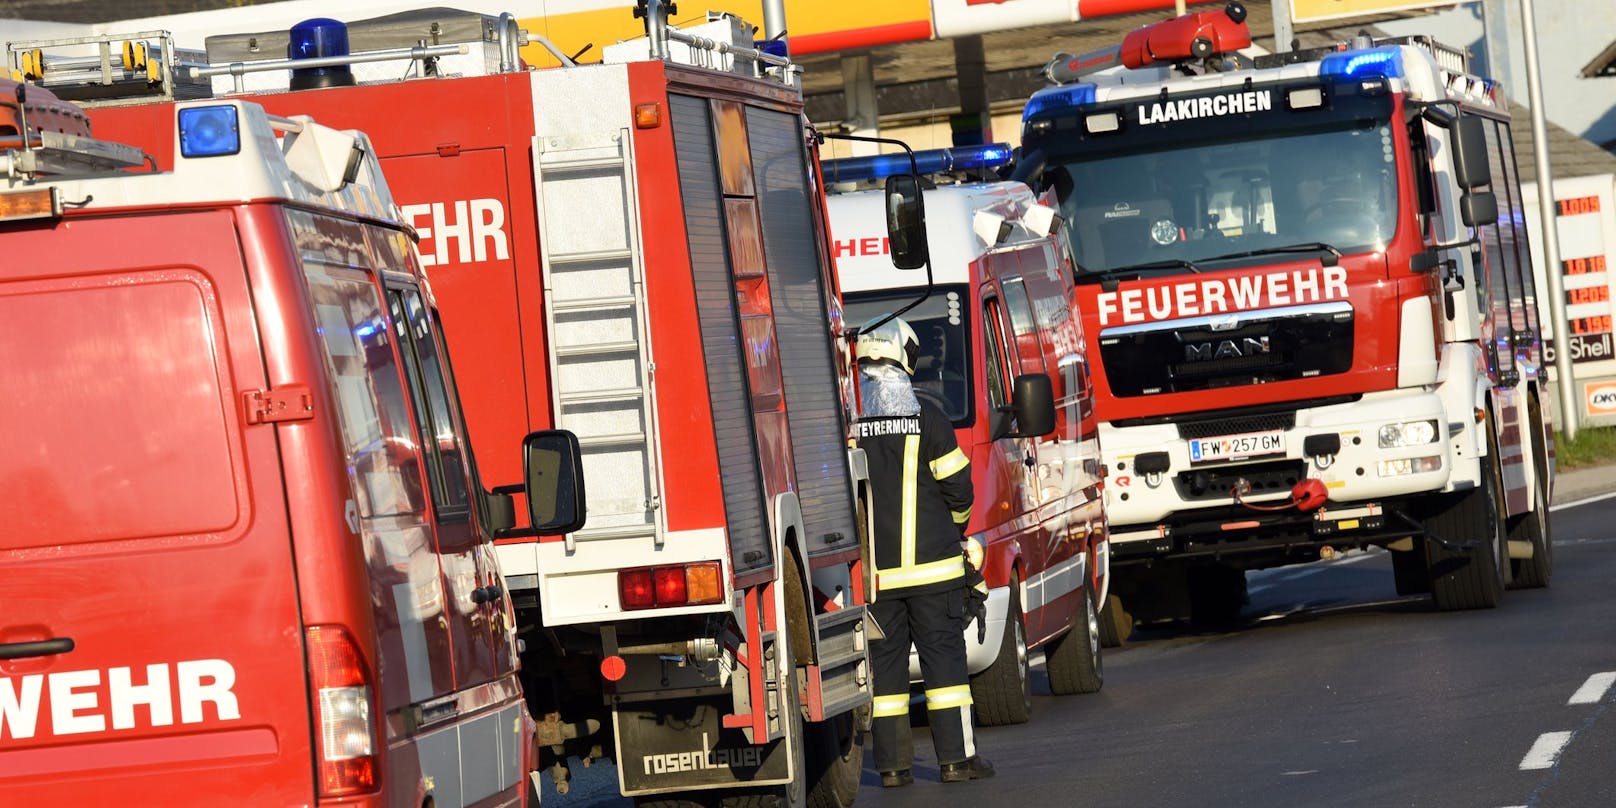 Donnerstagfrüh kam es in der Steiermark zu einem schweren Unfall mit drei beteiligten Fahrzeugen.